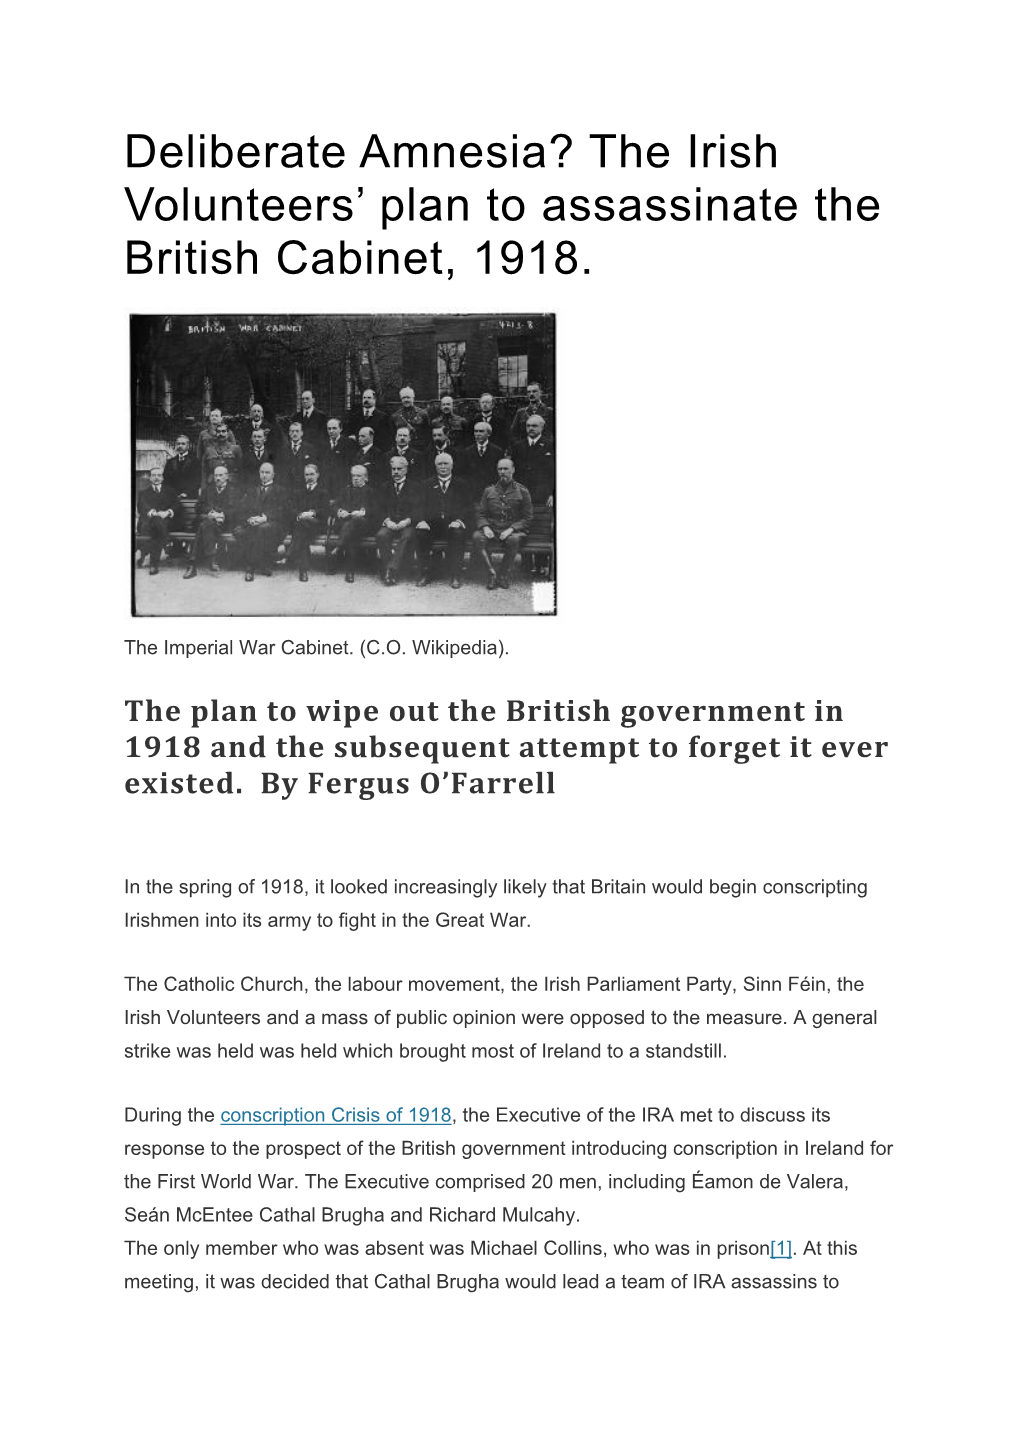 The Irish Volunteers' Plan to Assassinate the British Cabinet, 1918